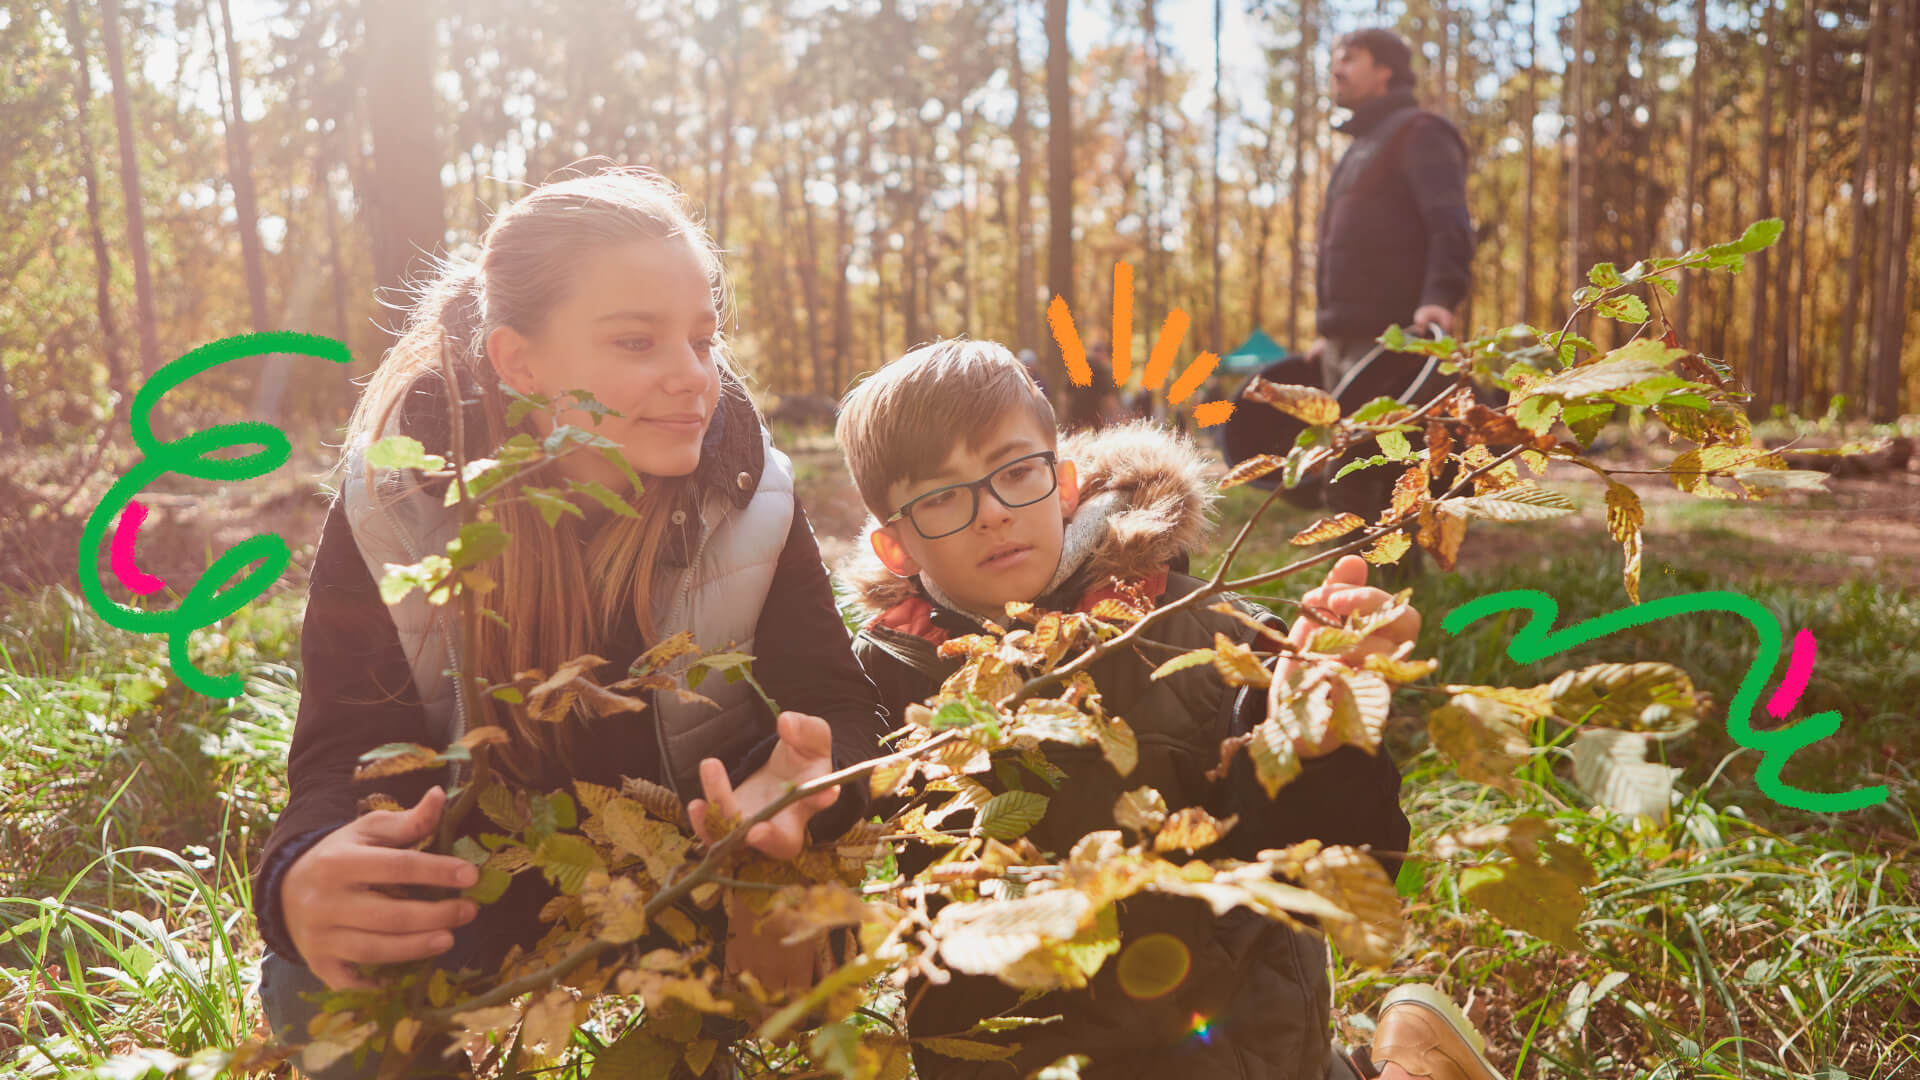 Foto de uma menina e um menino numa área aberta com árvores. As crianças seguram um galho com folhas secas. A matéria sobre ecoansiedade.